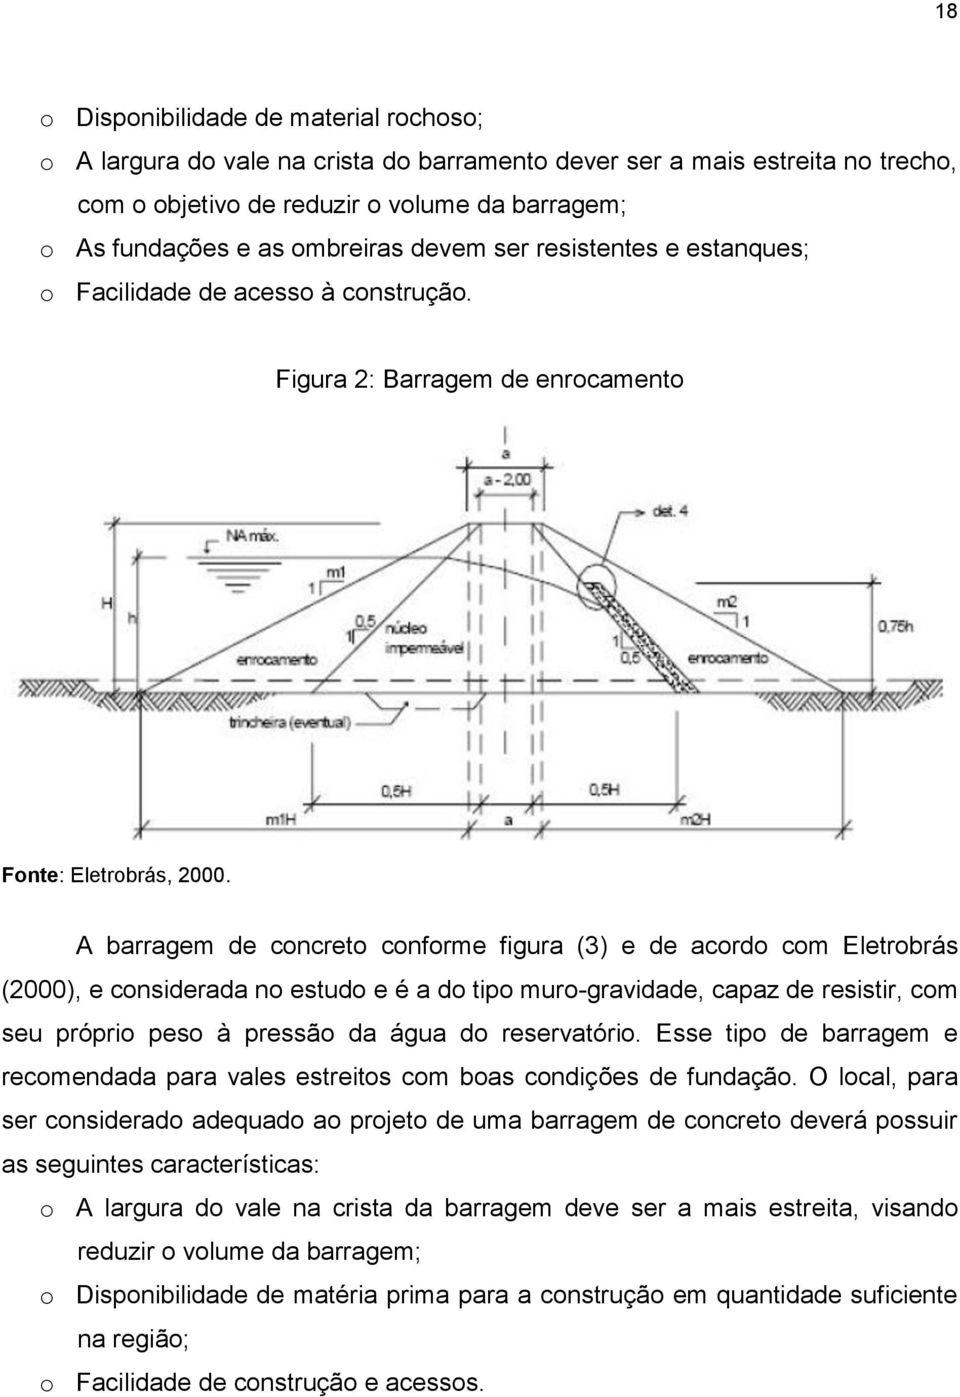 A barragem de concreto conforme figura (3) e de acordo com Eletrobrás (2000), e considerada no estudo e é a do tipo muro-gravidade, capaz de resistir, com seu próprio peso à pressão da água do